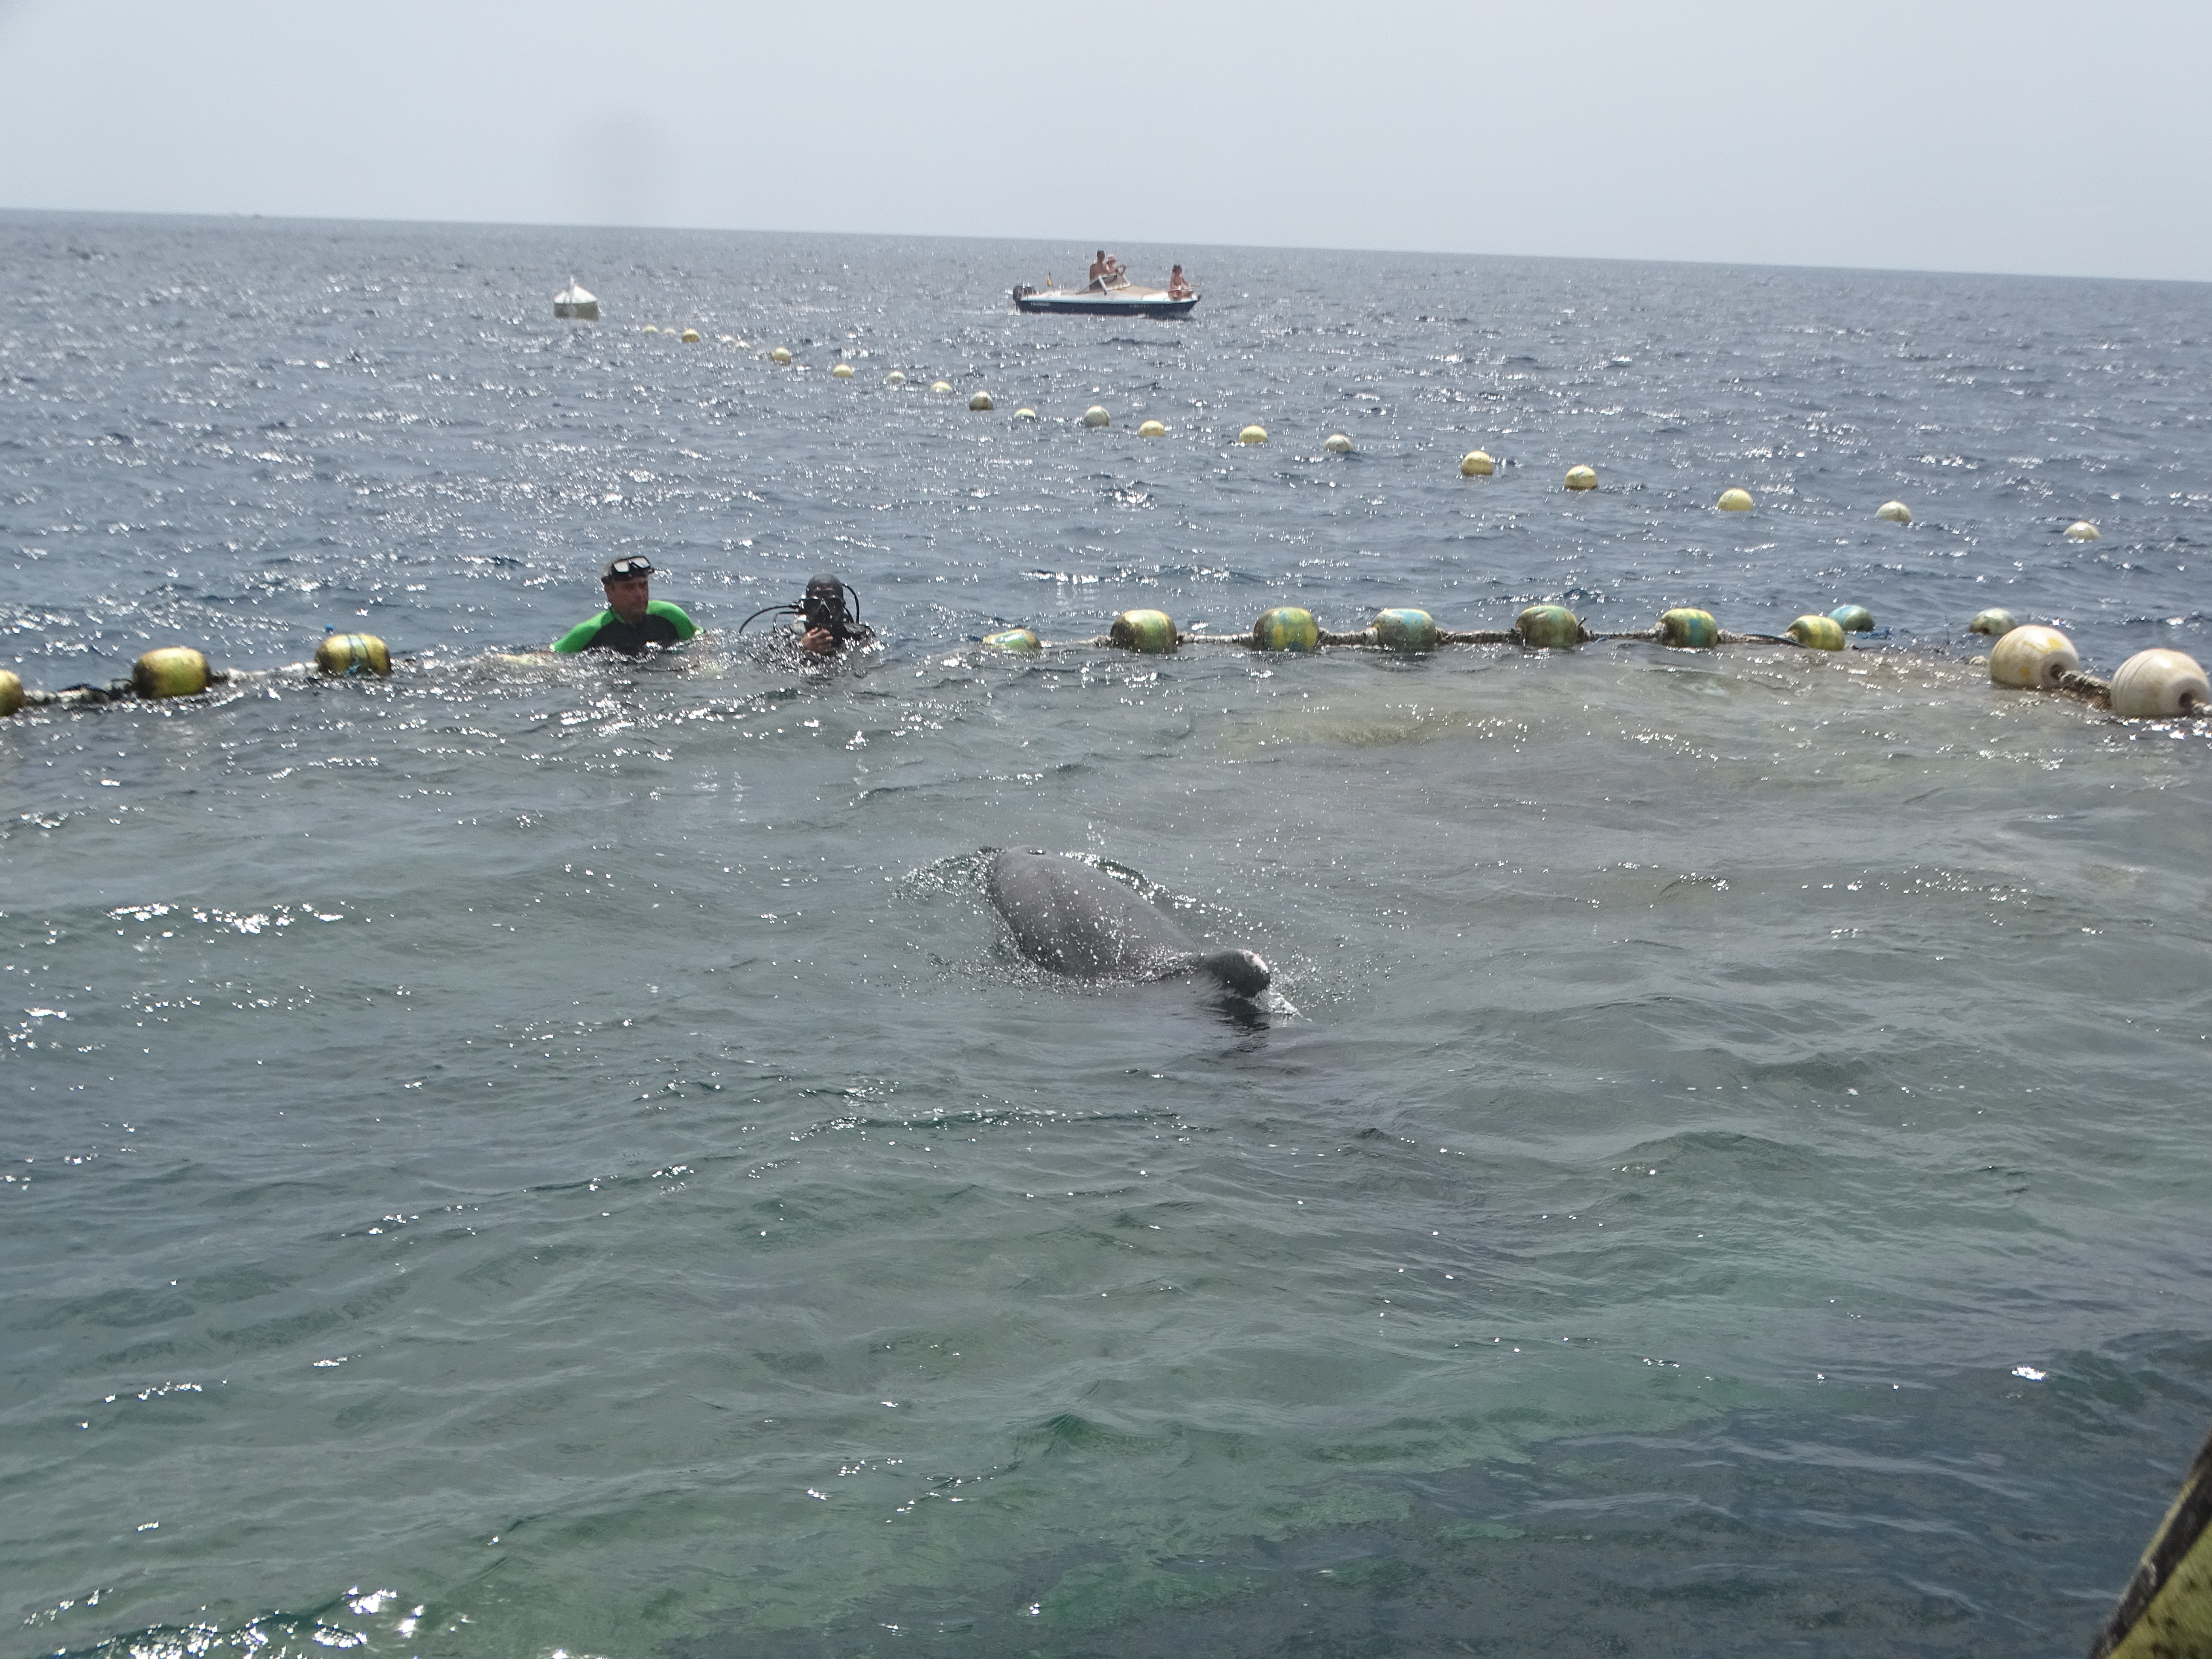 Uno de los delfines, visto desde la superficie. Imagen: P. García y V. García / ANSE